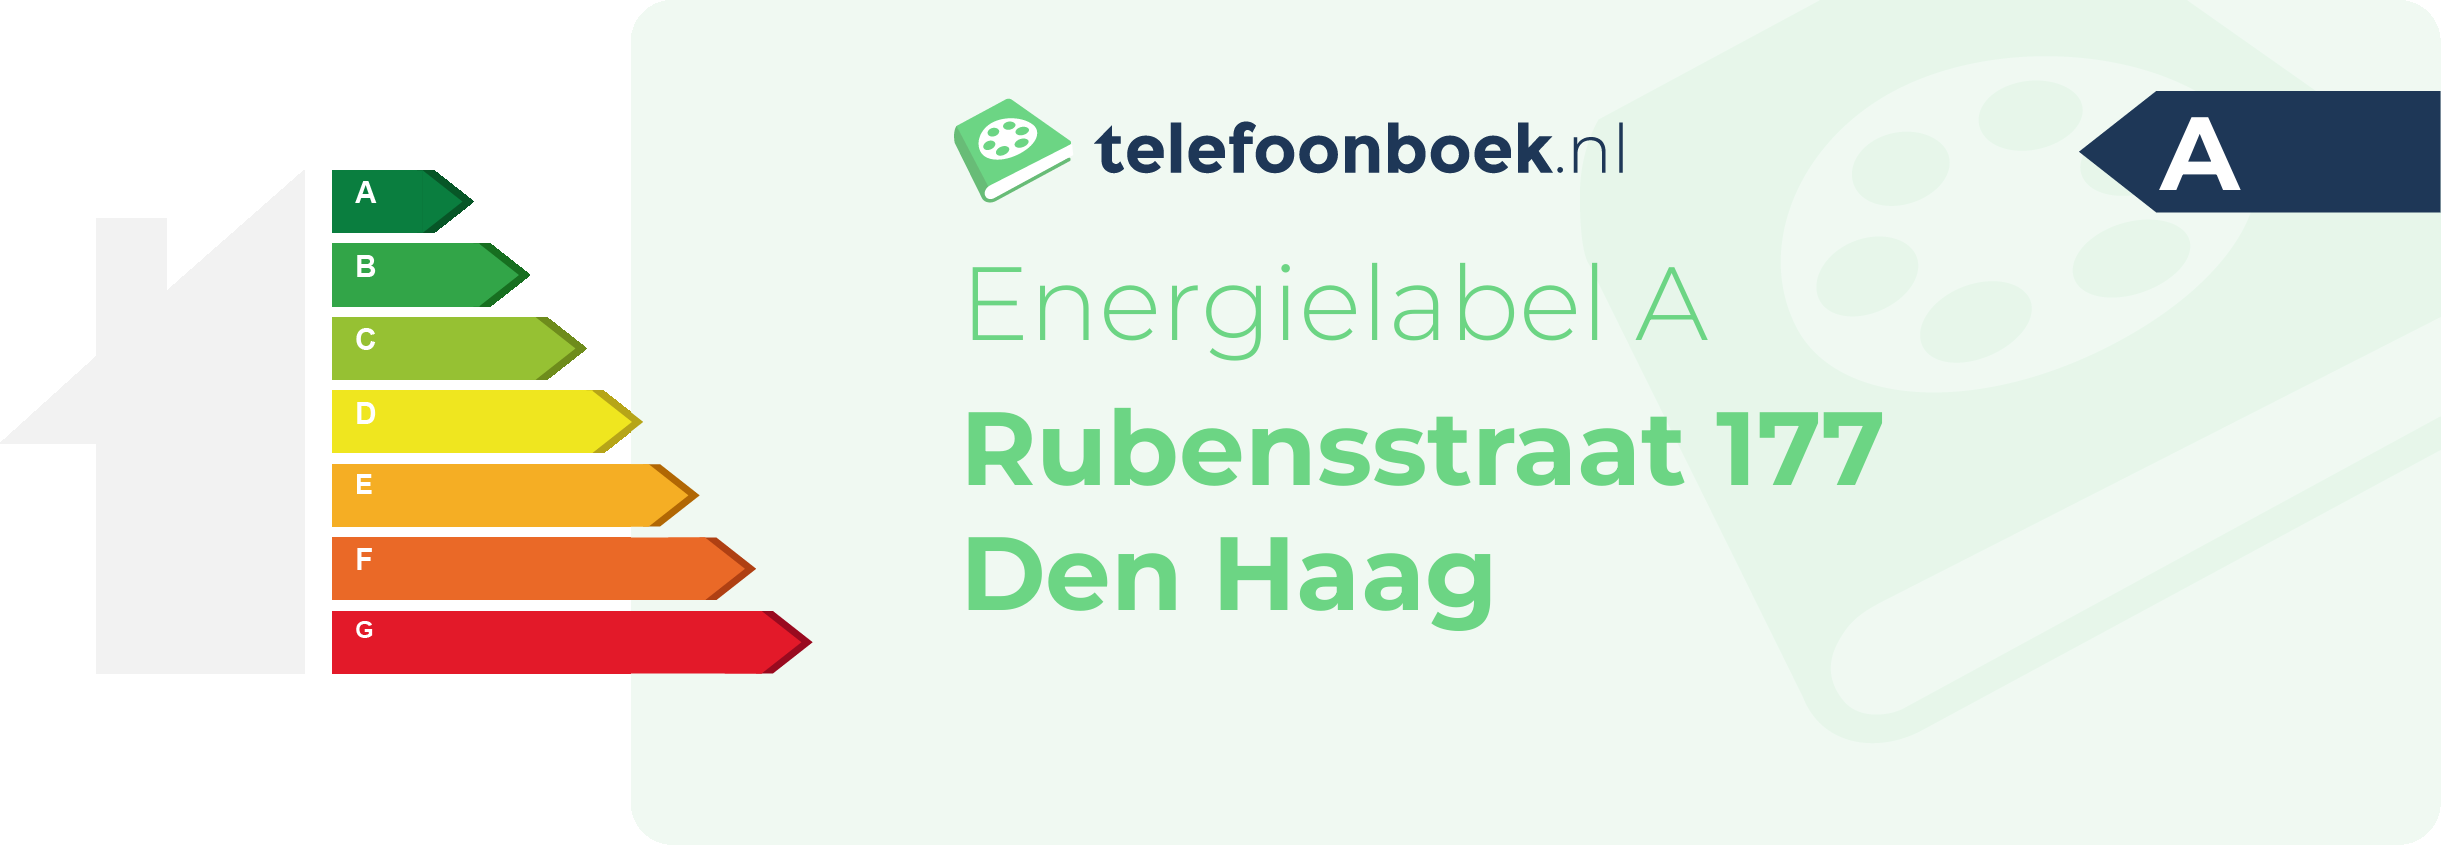 Energielabel Rubensstraat 177 Den Haag